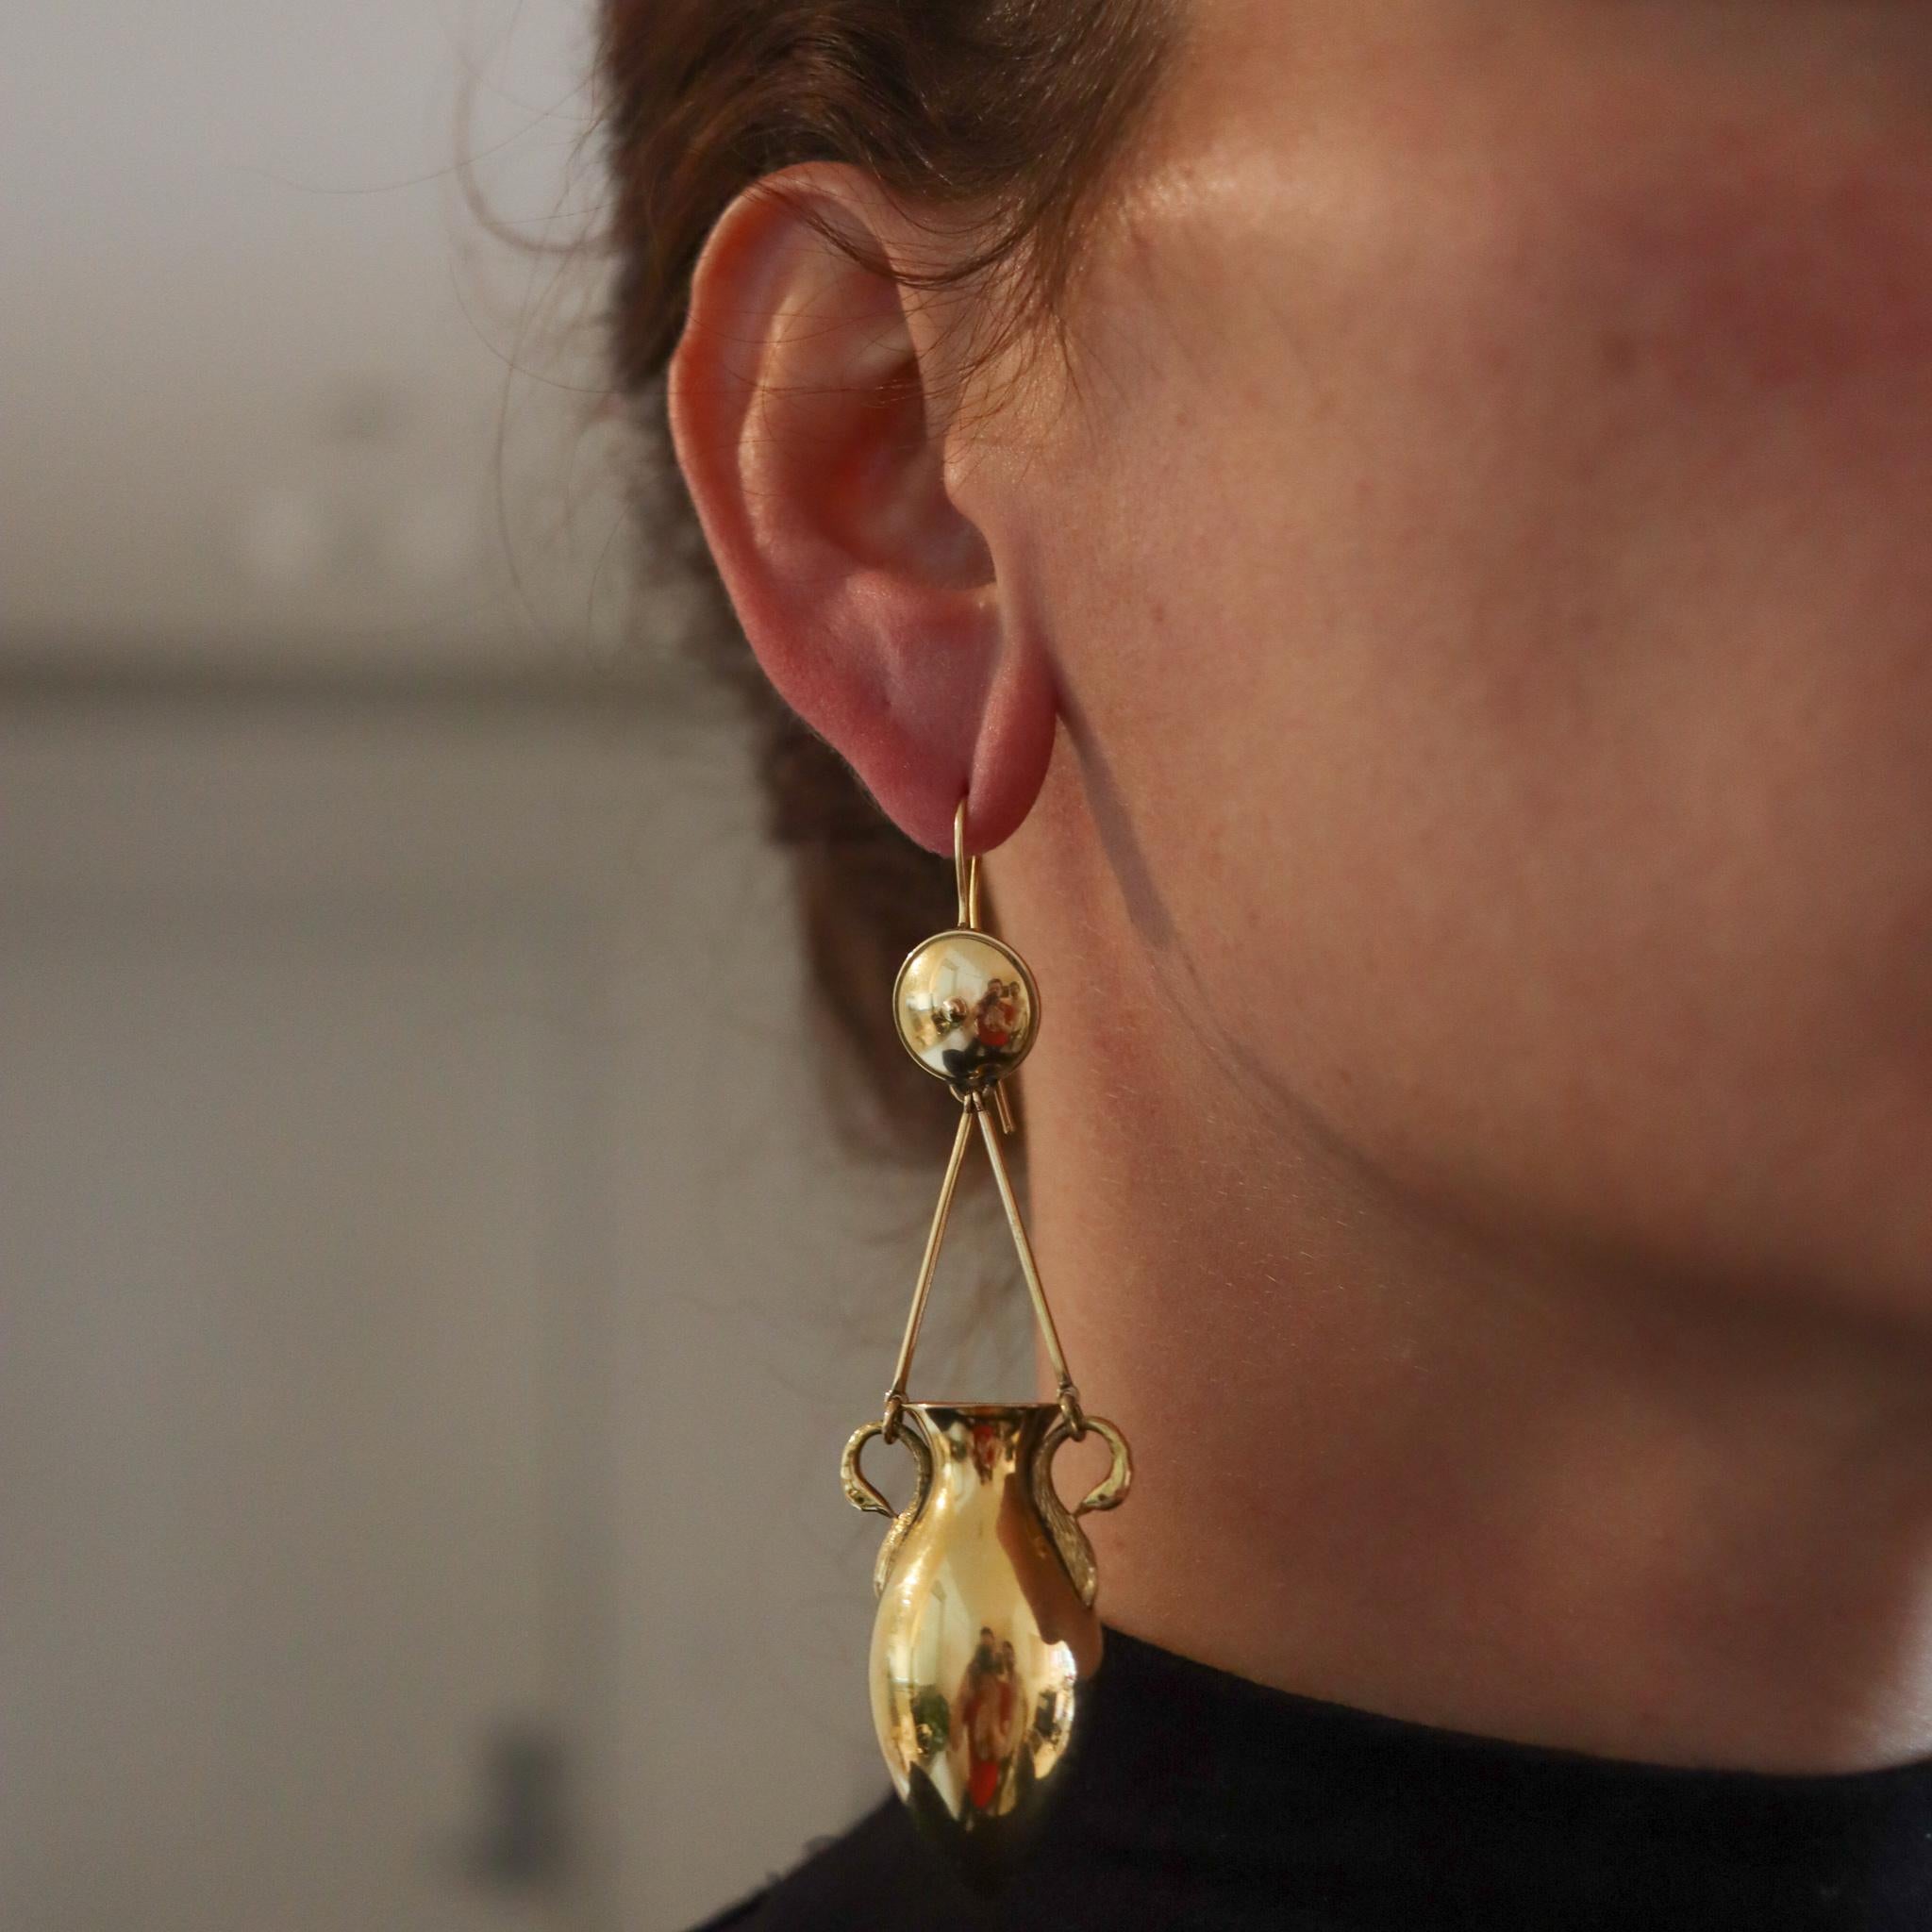 Pendentifs en forme de gouttes d'oreille de style néo-étrusque-romain.

Magnifiques boucles d'oreilles surdimensionnées, de l'époque victorienne (1837-1901) vers 1880. Cette magnifique paire a été fabriquée avec des motifs de style étrusque et